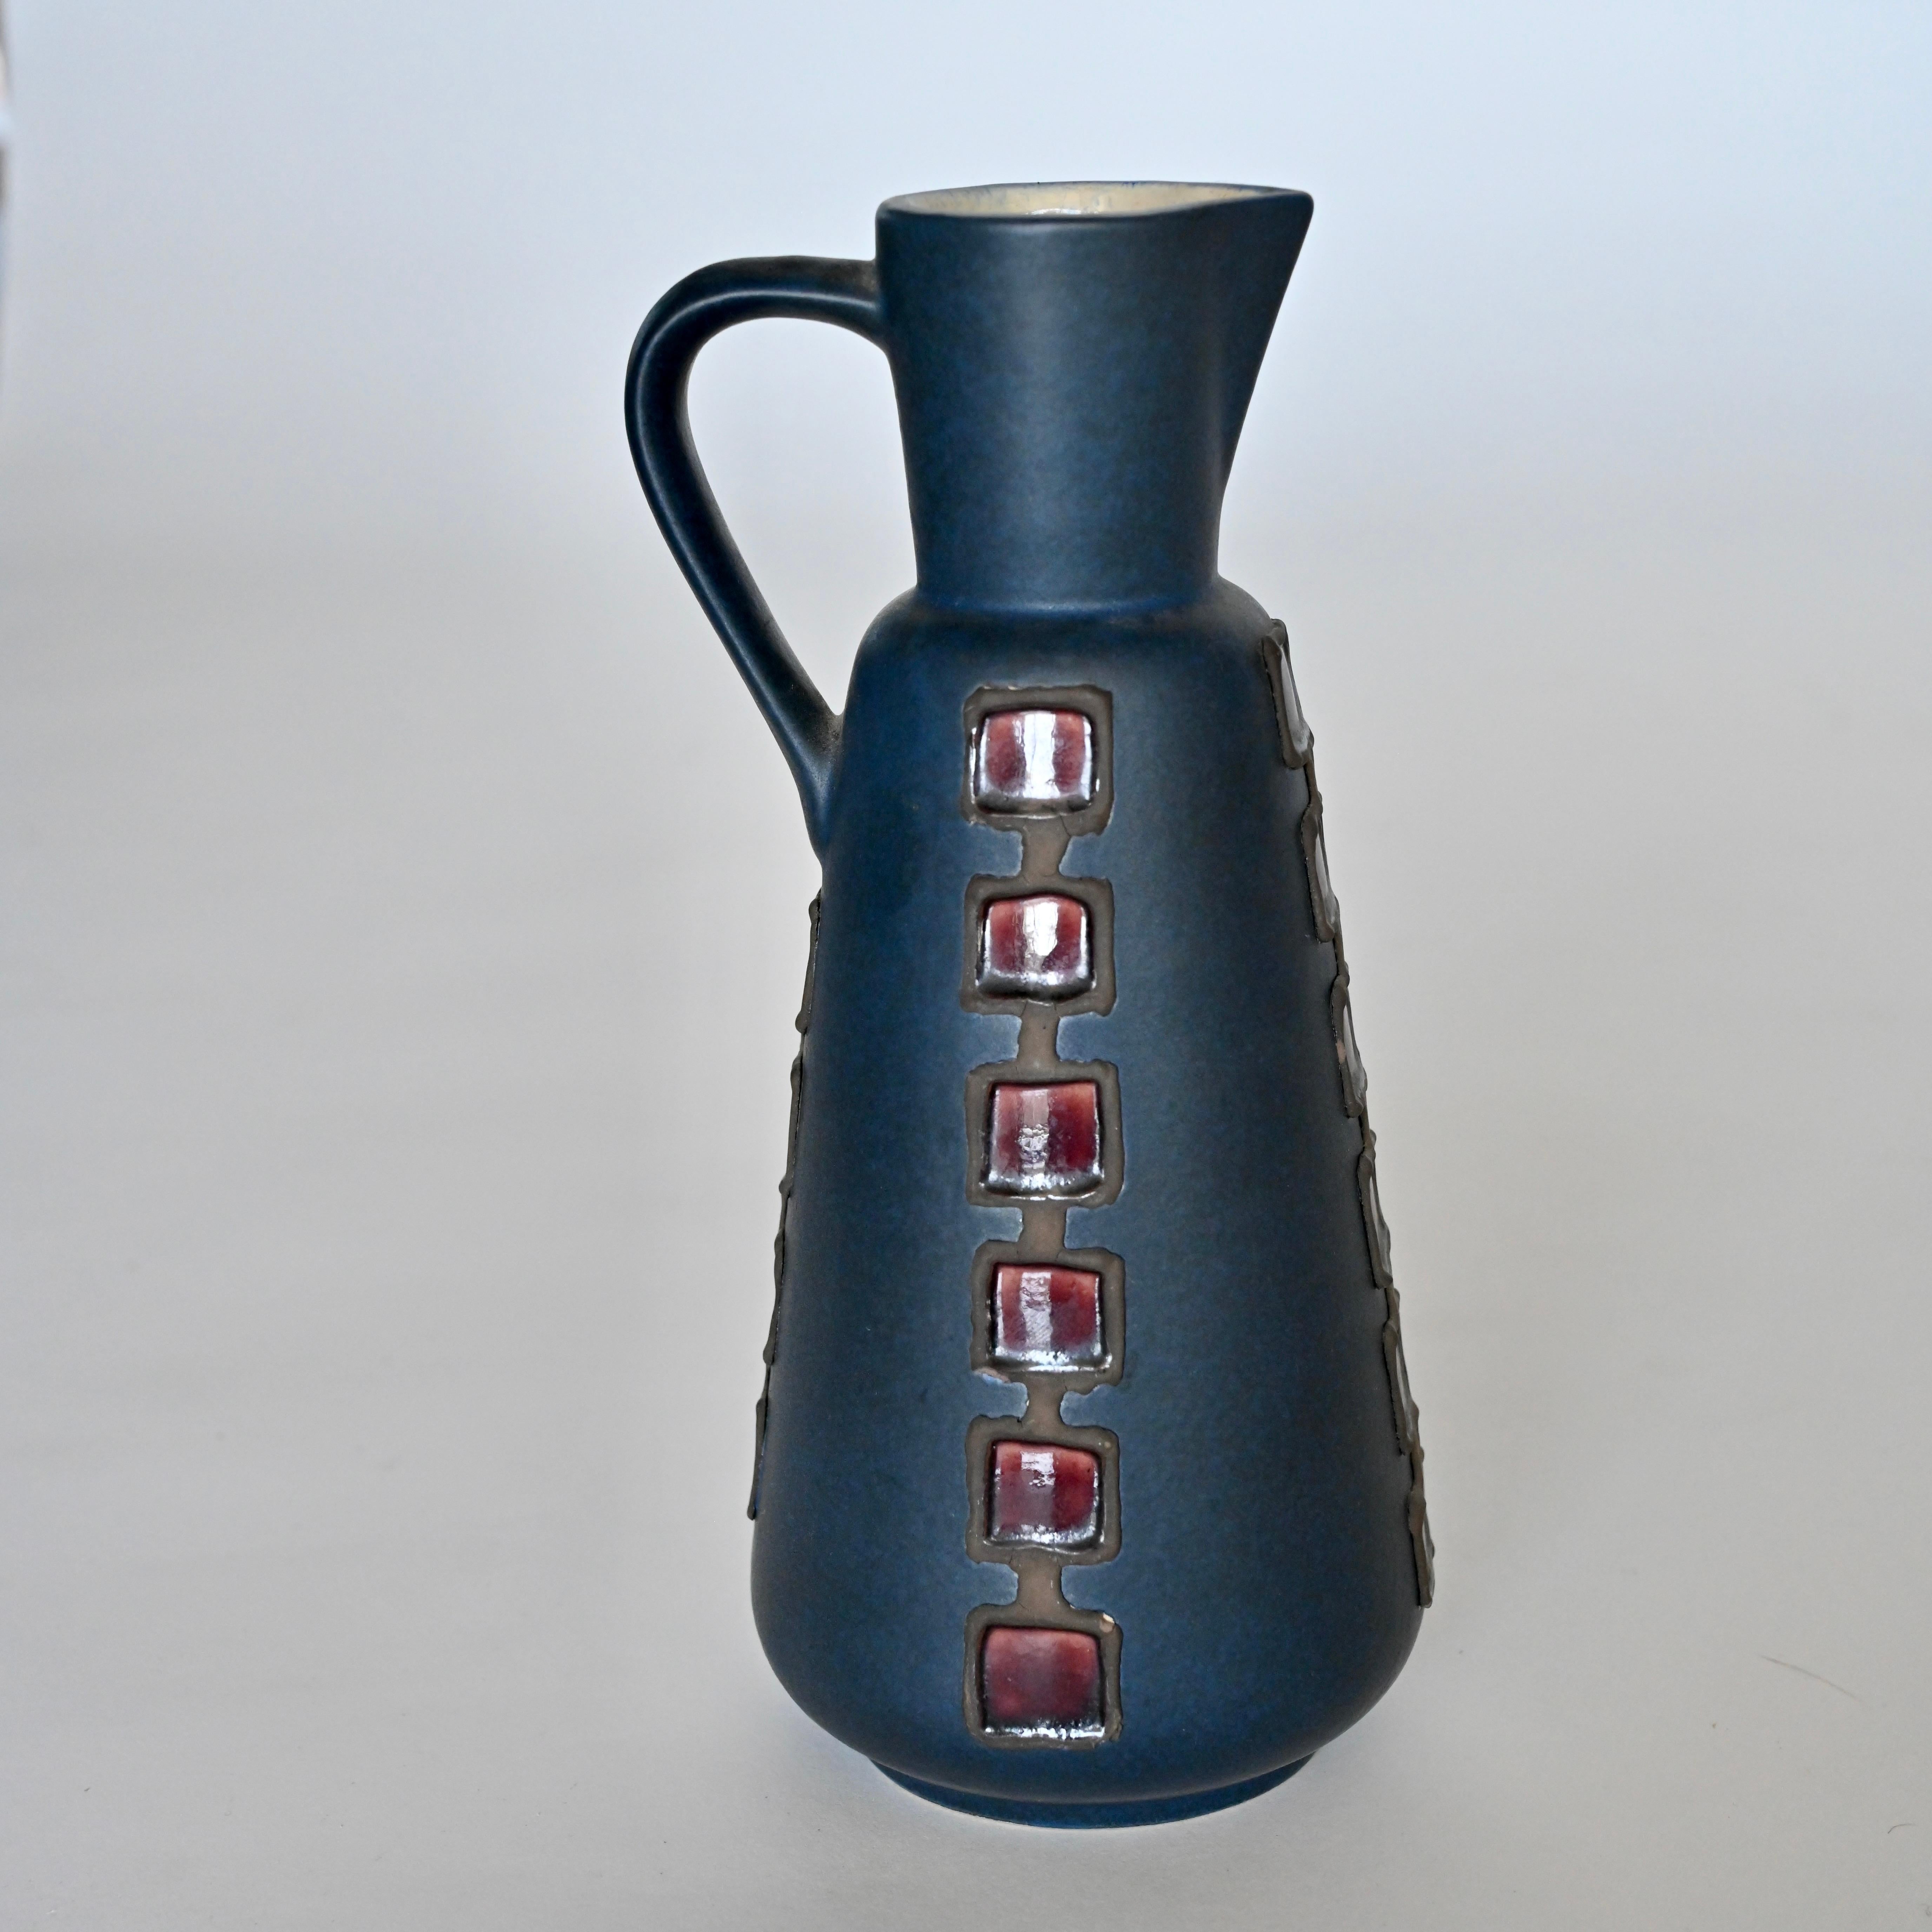 Pichet / vase unique à glaçure bleue avec détails décoratifs. Marqué 261/26 en bas. Suède, milieu du 20e siècle.